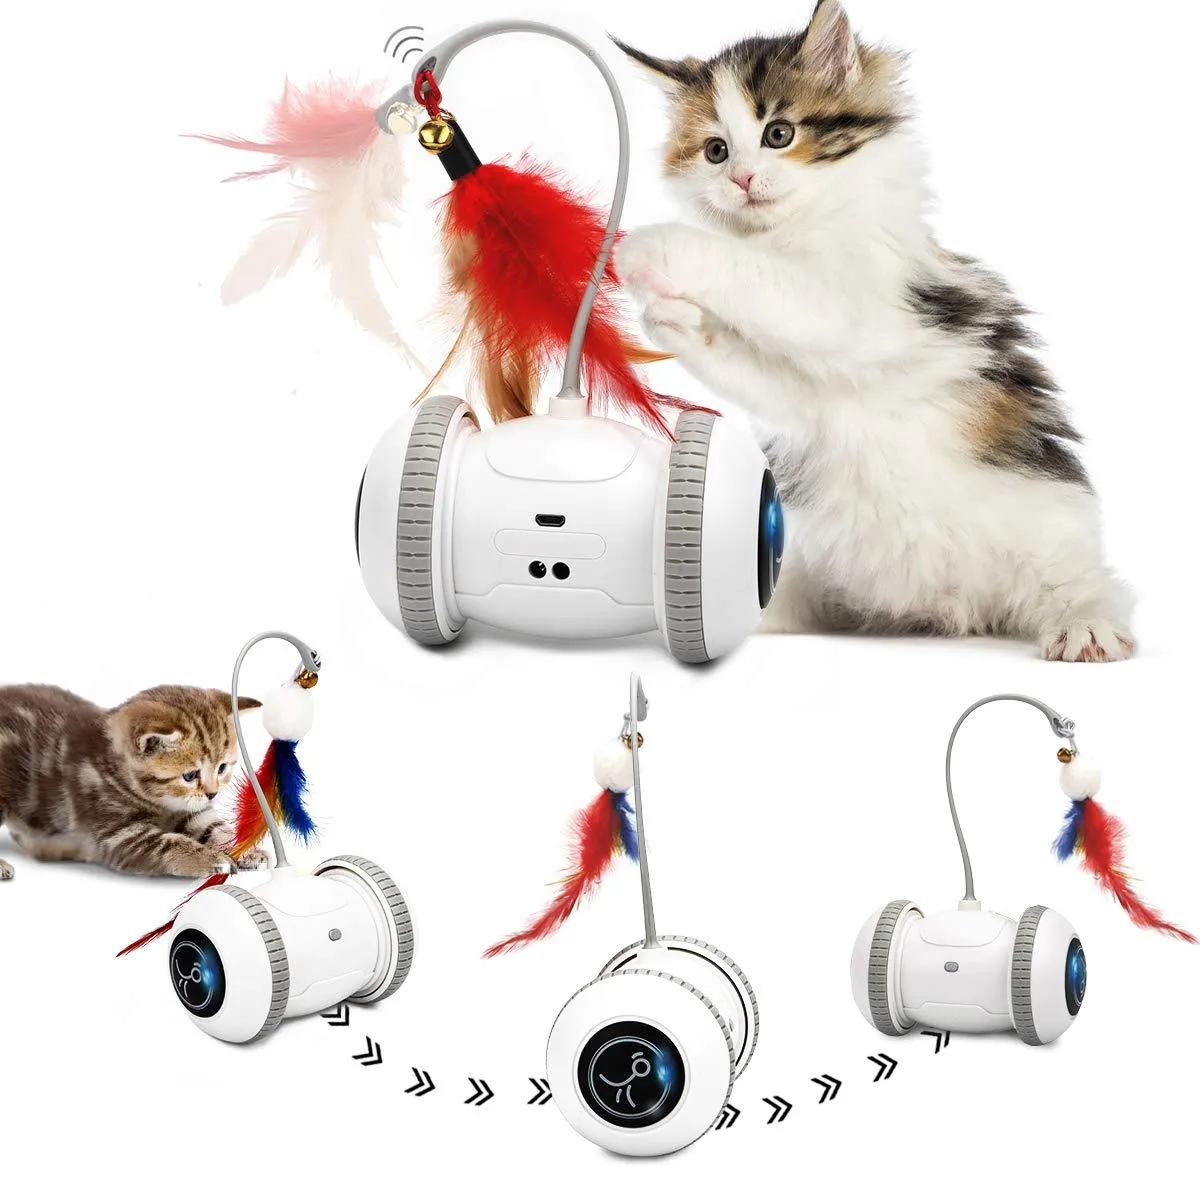 おもちゃスマートセンサー猫おもちゃインタラクティブオートマチックエレクトロニックおもちゃLEDライトUSB充電式屋内ボール子猫おもちゃ